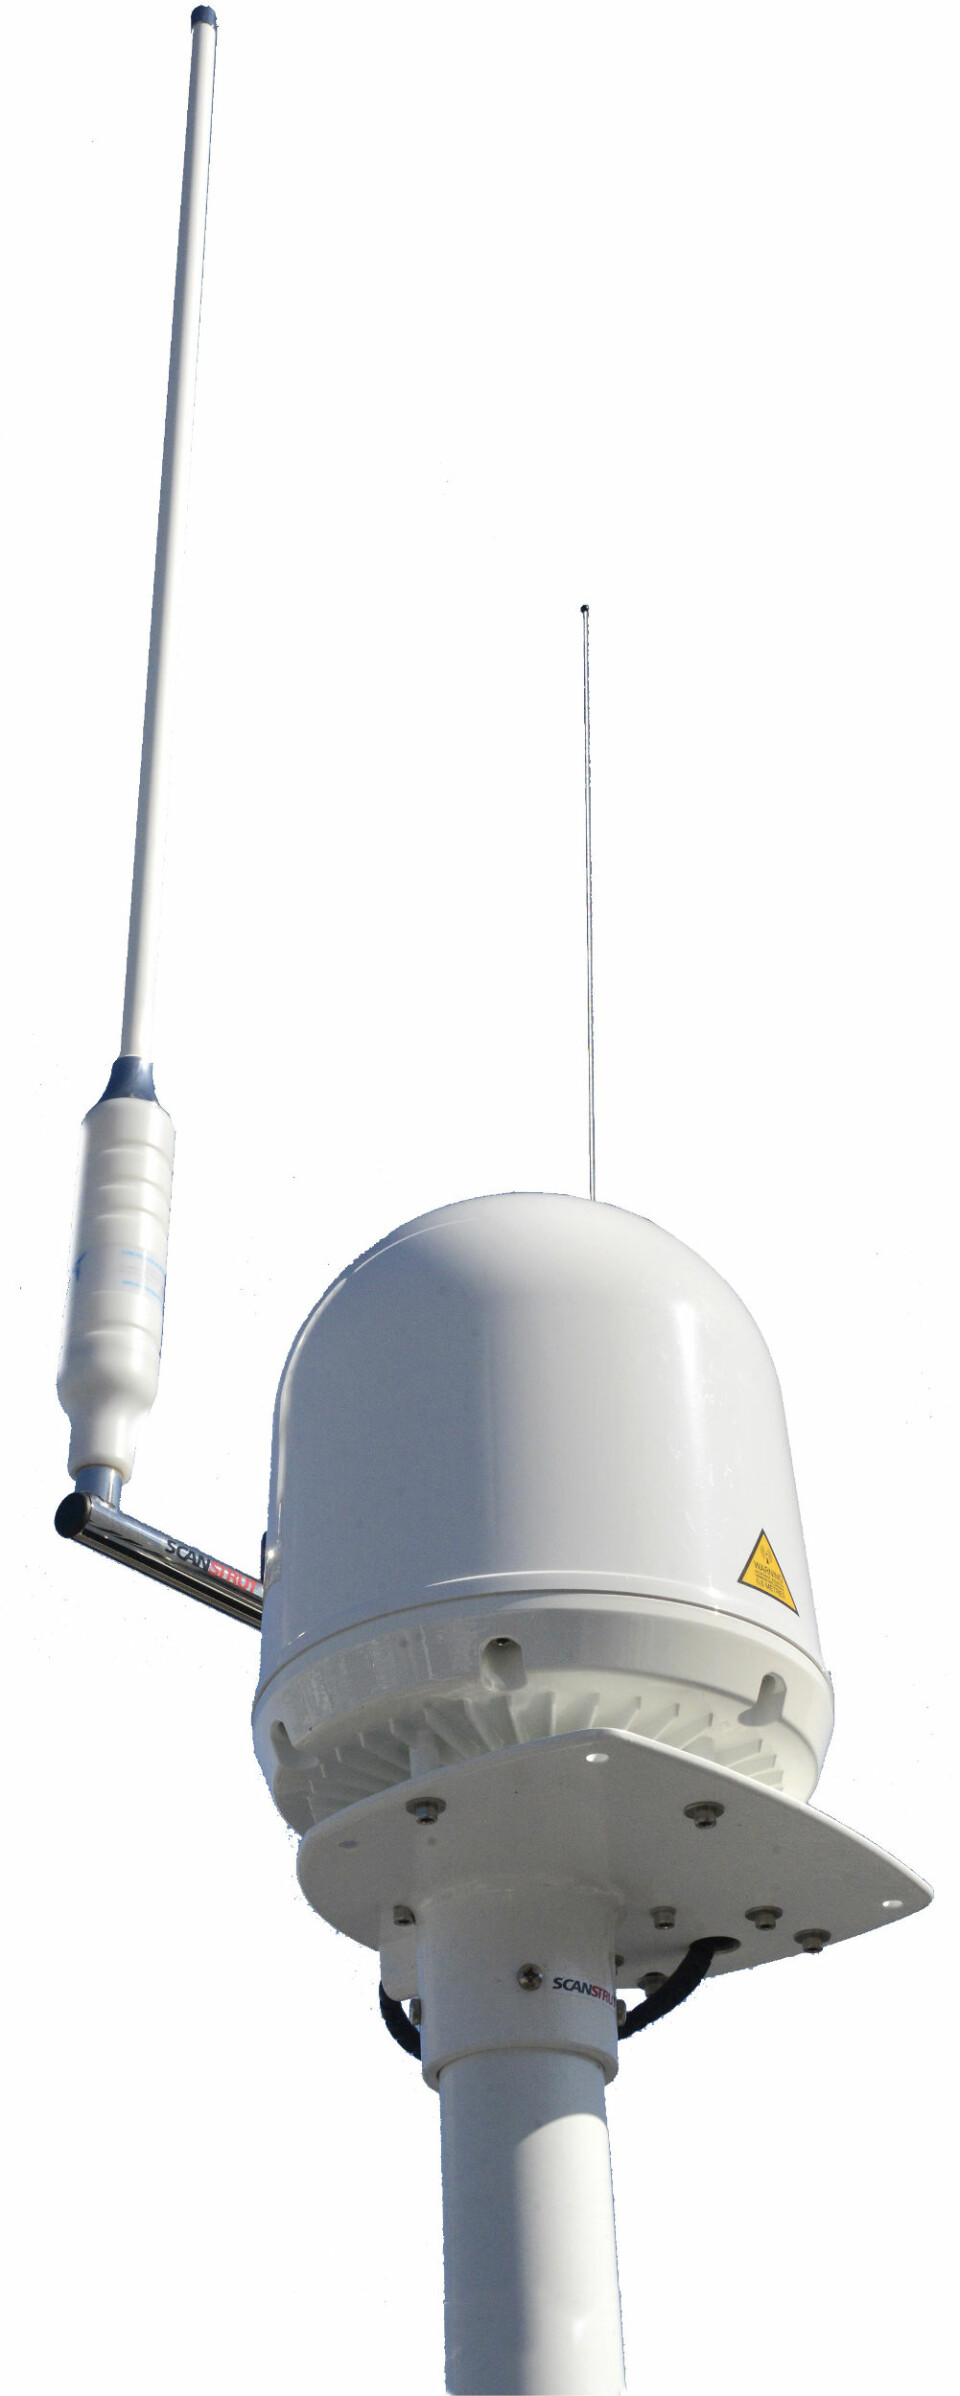 KOMMUNIKASJON: En Wi-Fi-antenne gir bredbånd langt ut på havet hvor Fleet 150 kommunikasjonen tar over.